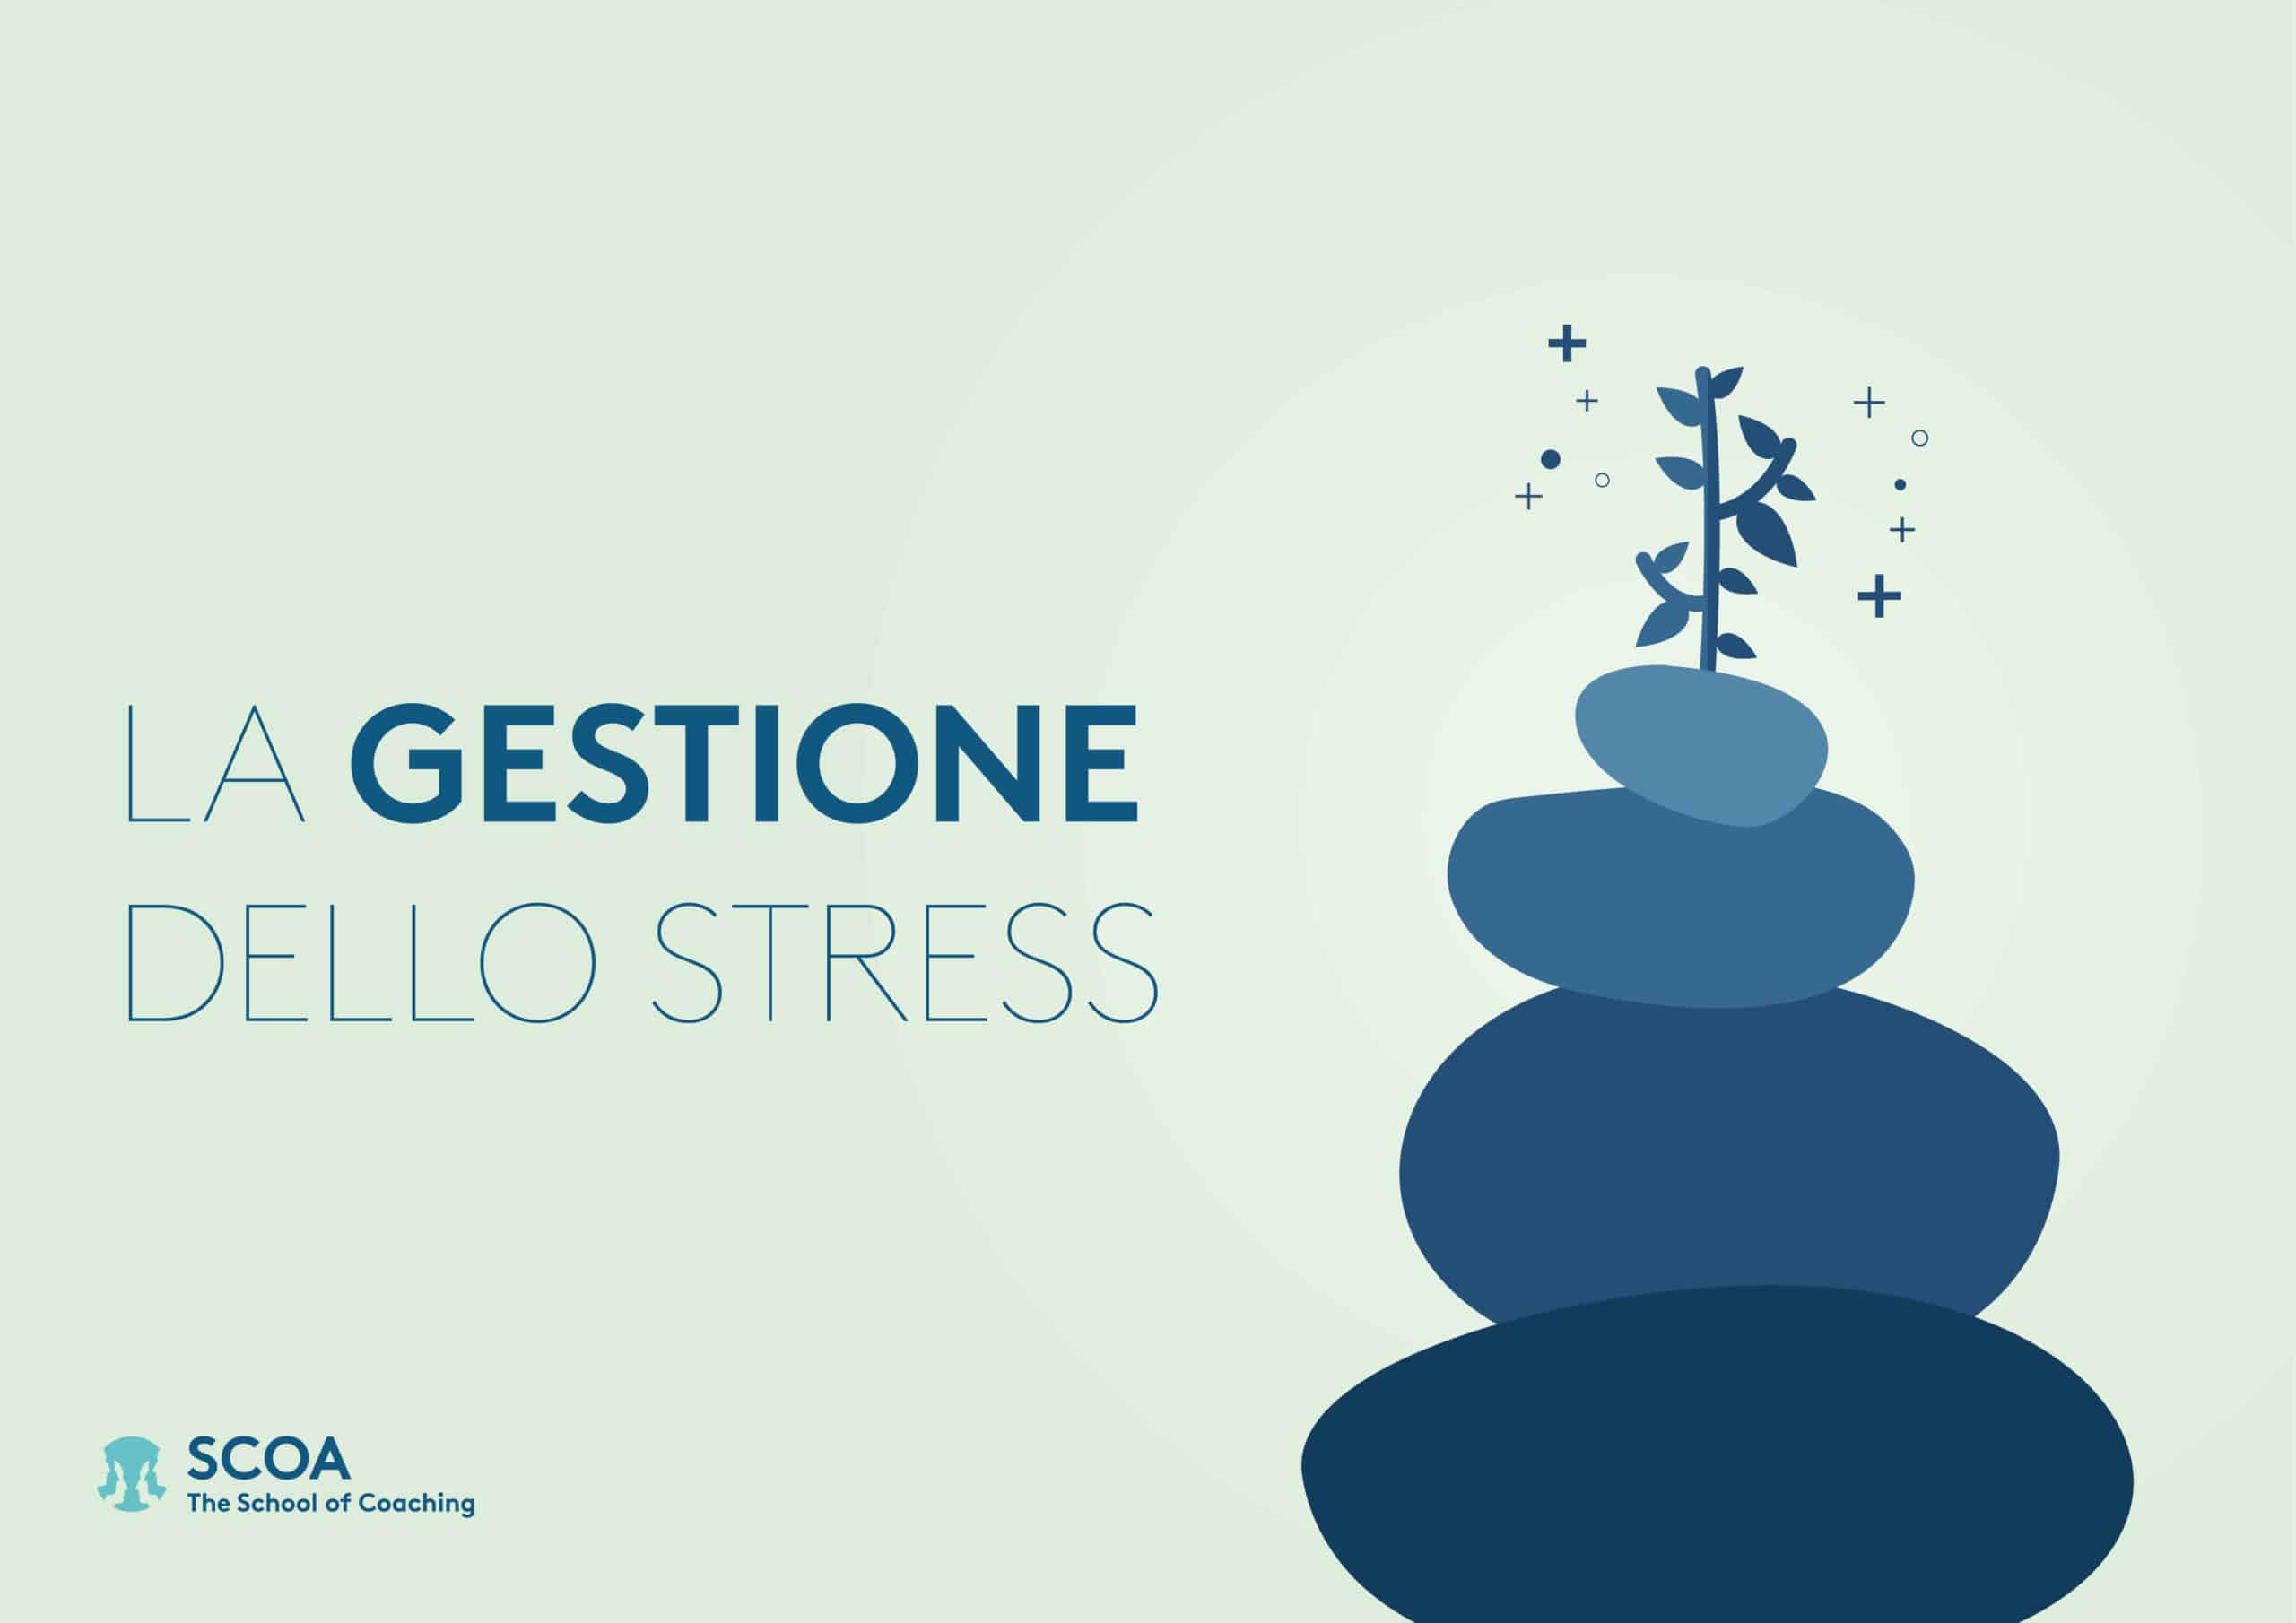 La gestione dello stress